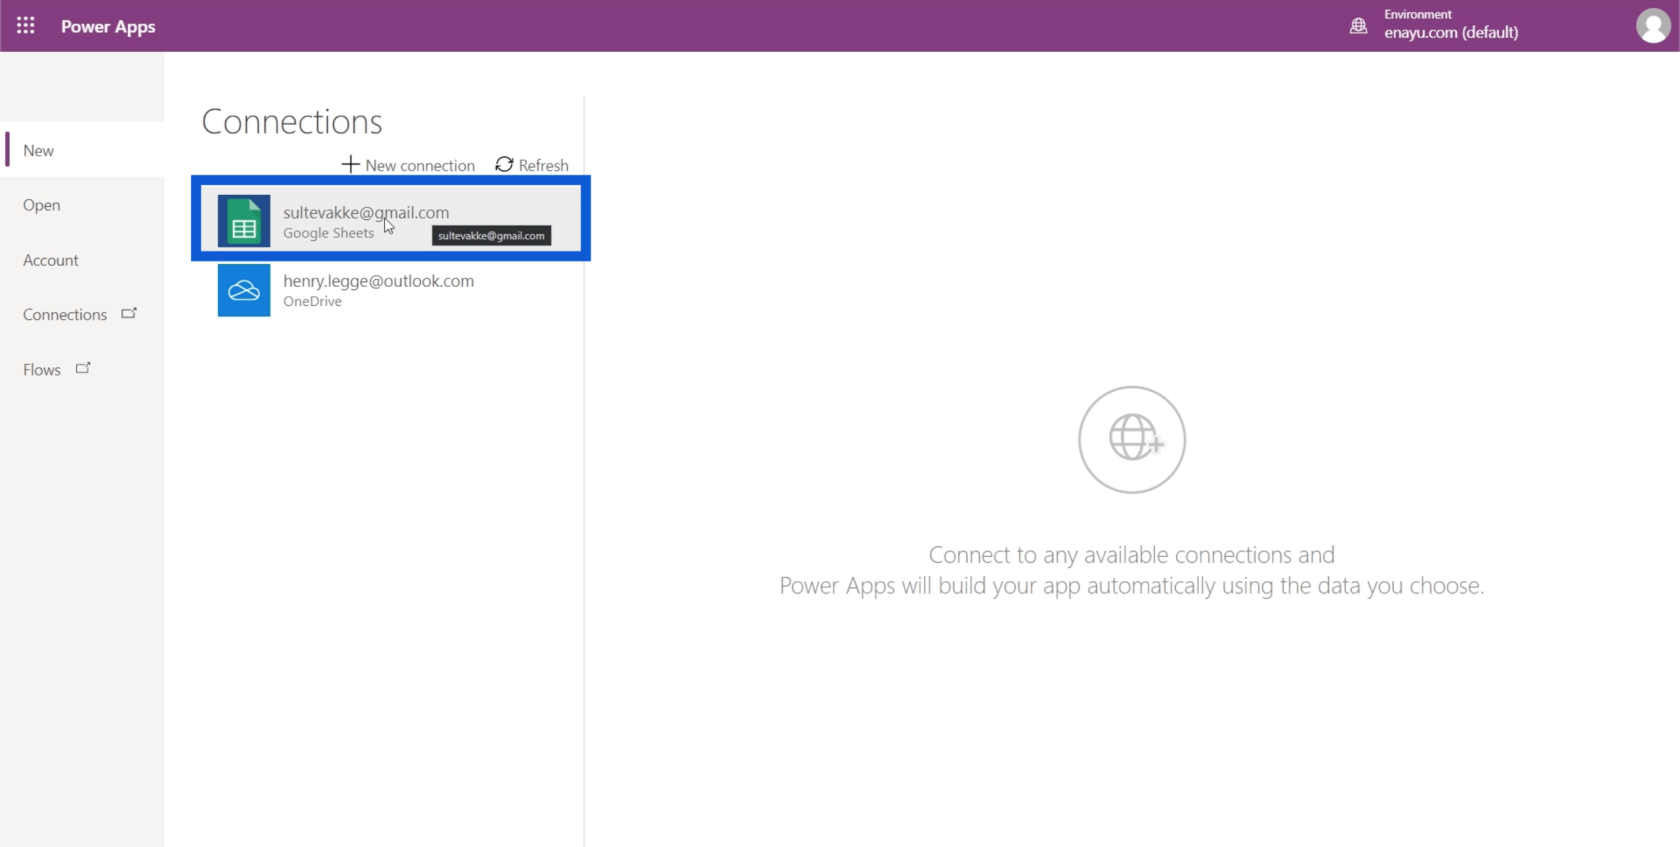 Configuração do ambiente do Power Apps: conectar-se ao OneDrive e ao Google Drive